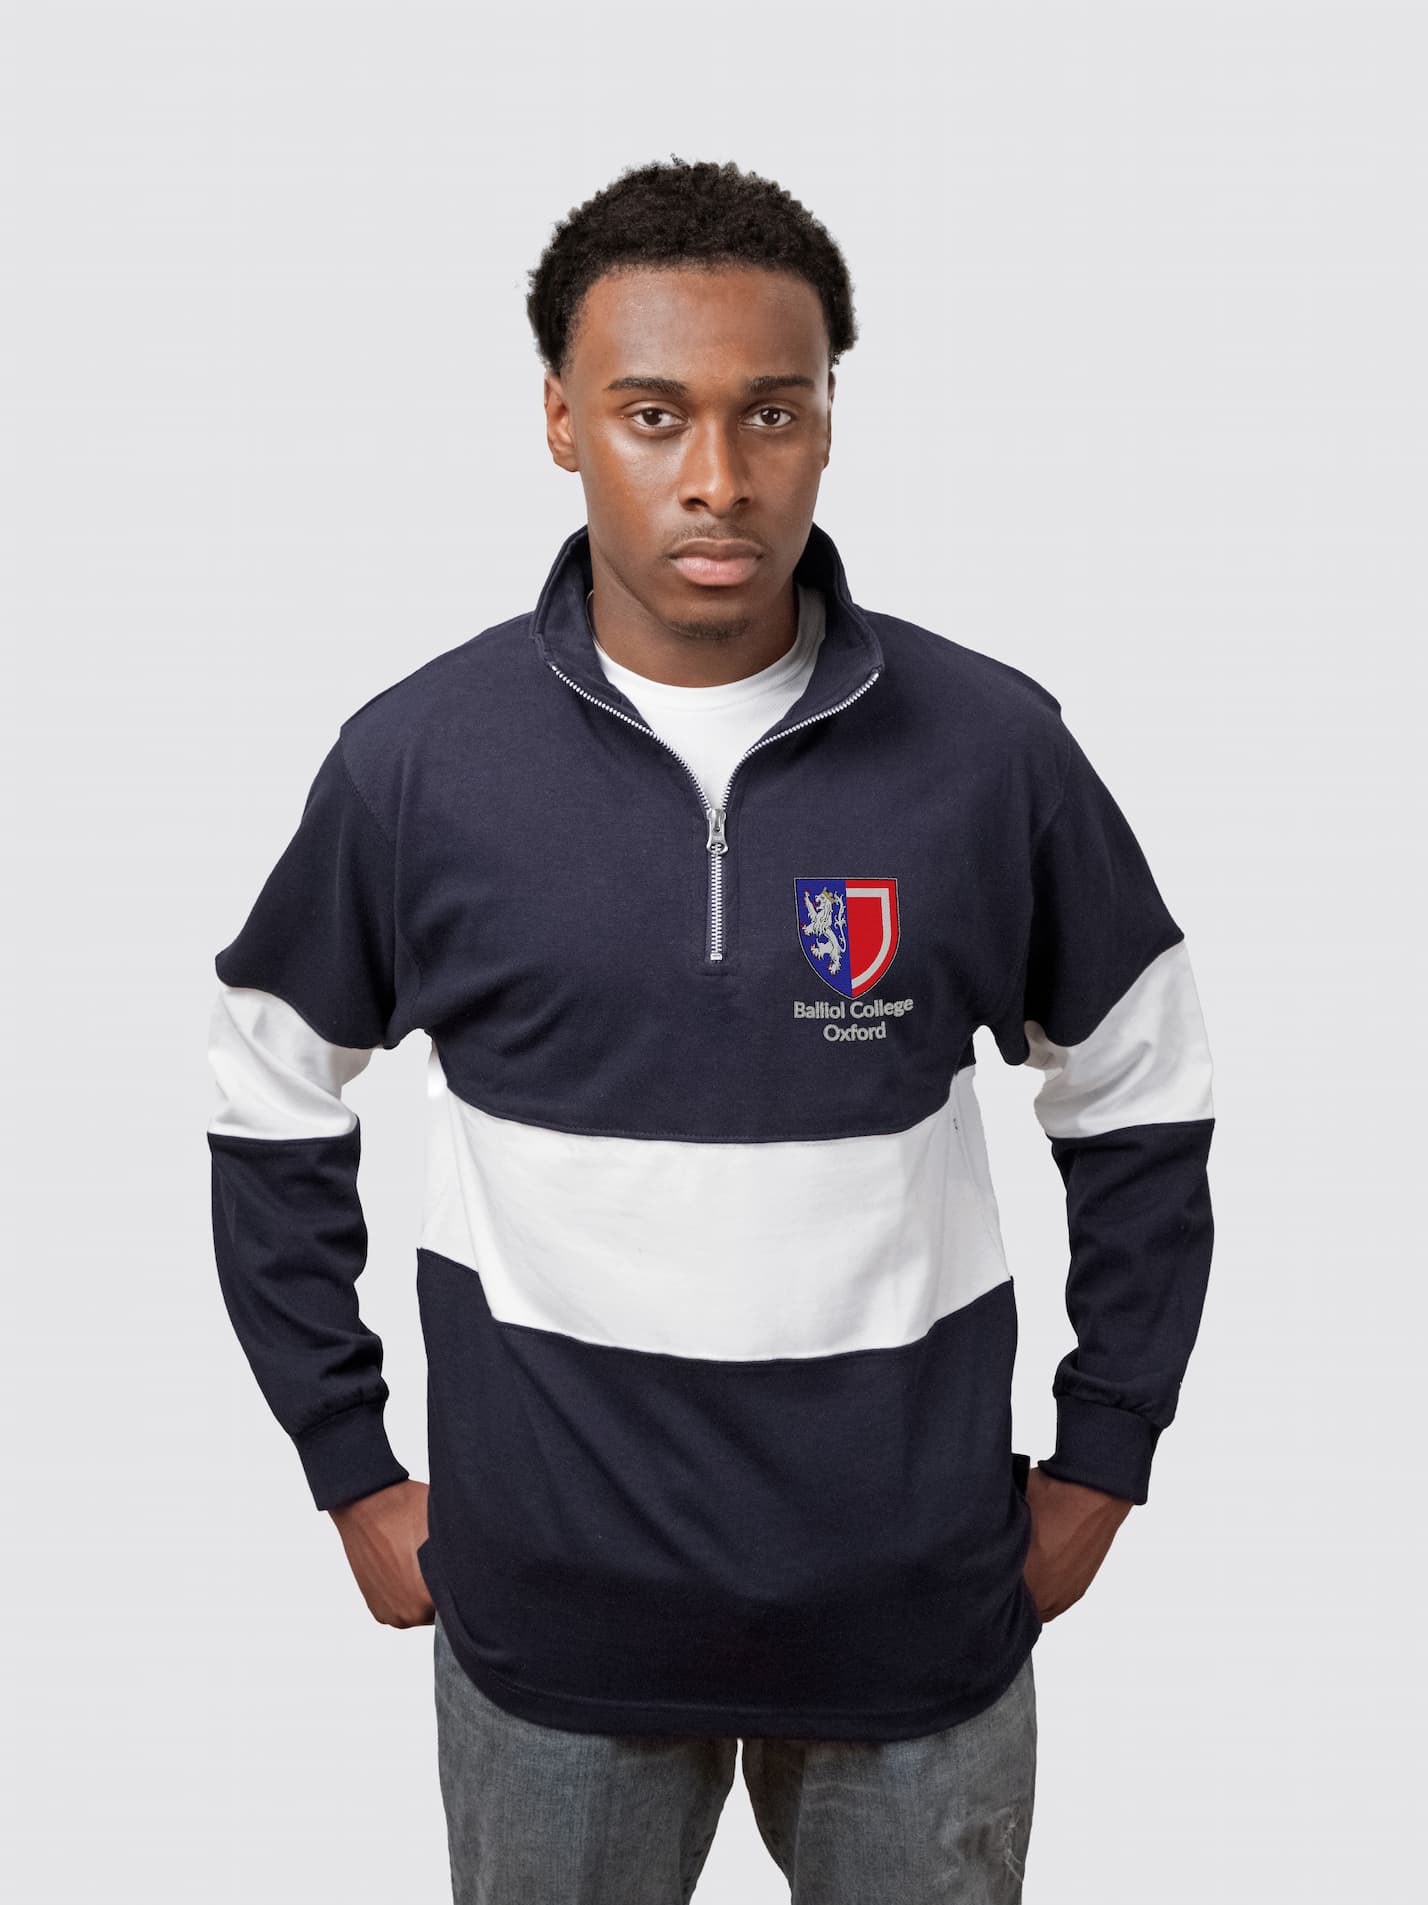 Balliol College Oxford Unisex Panelled 1/4 Zip Sweatshirt